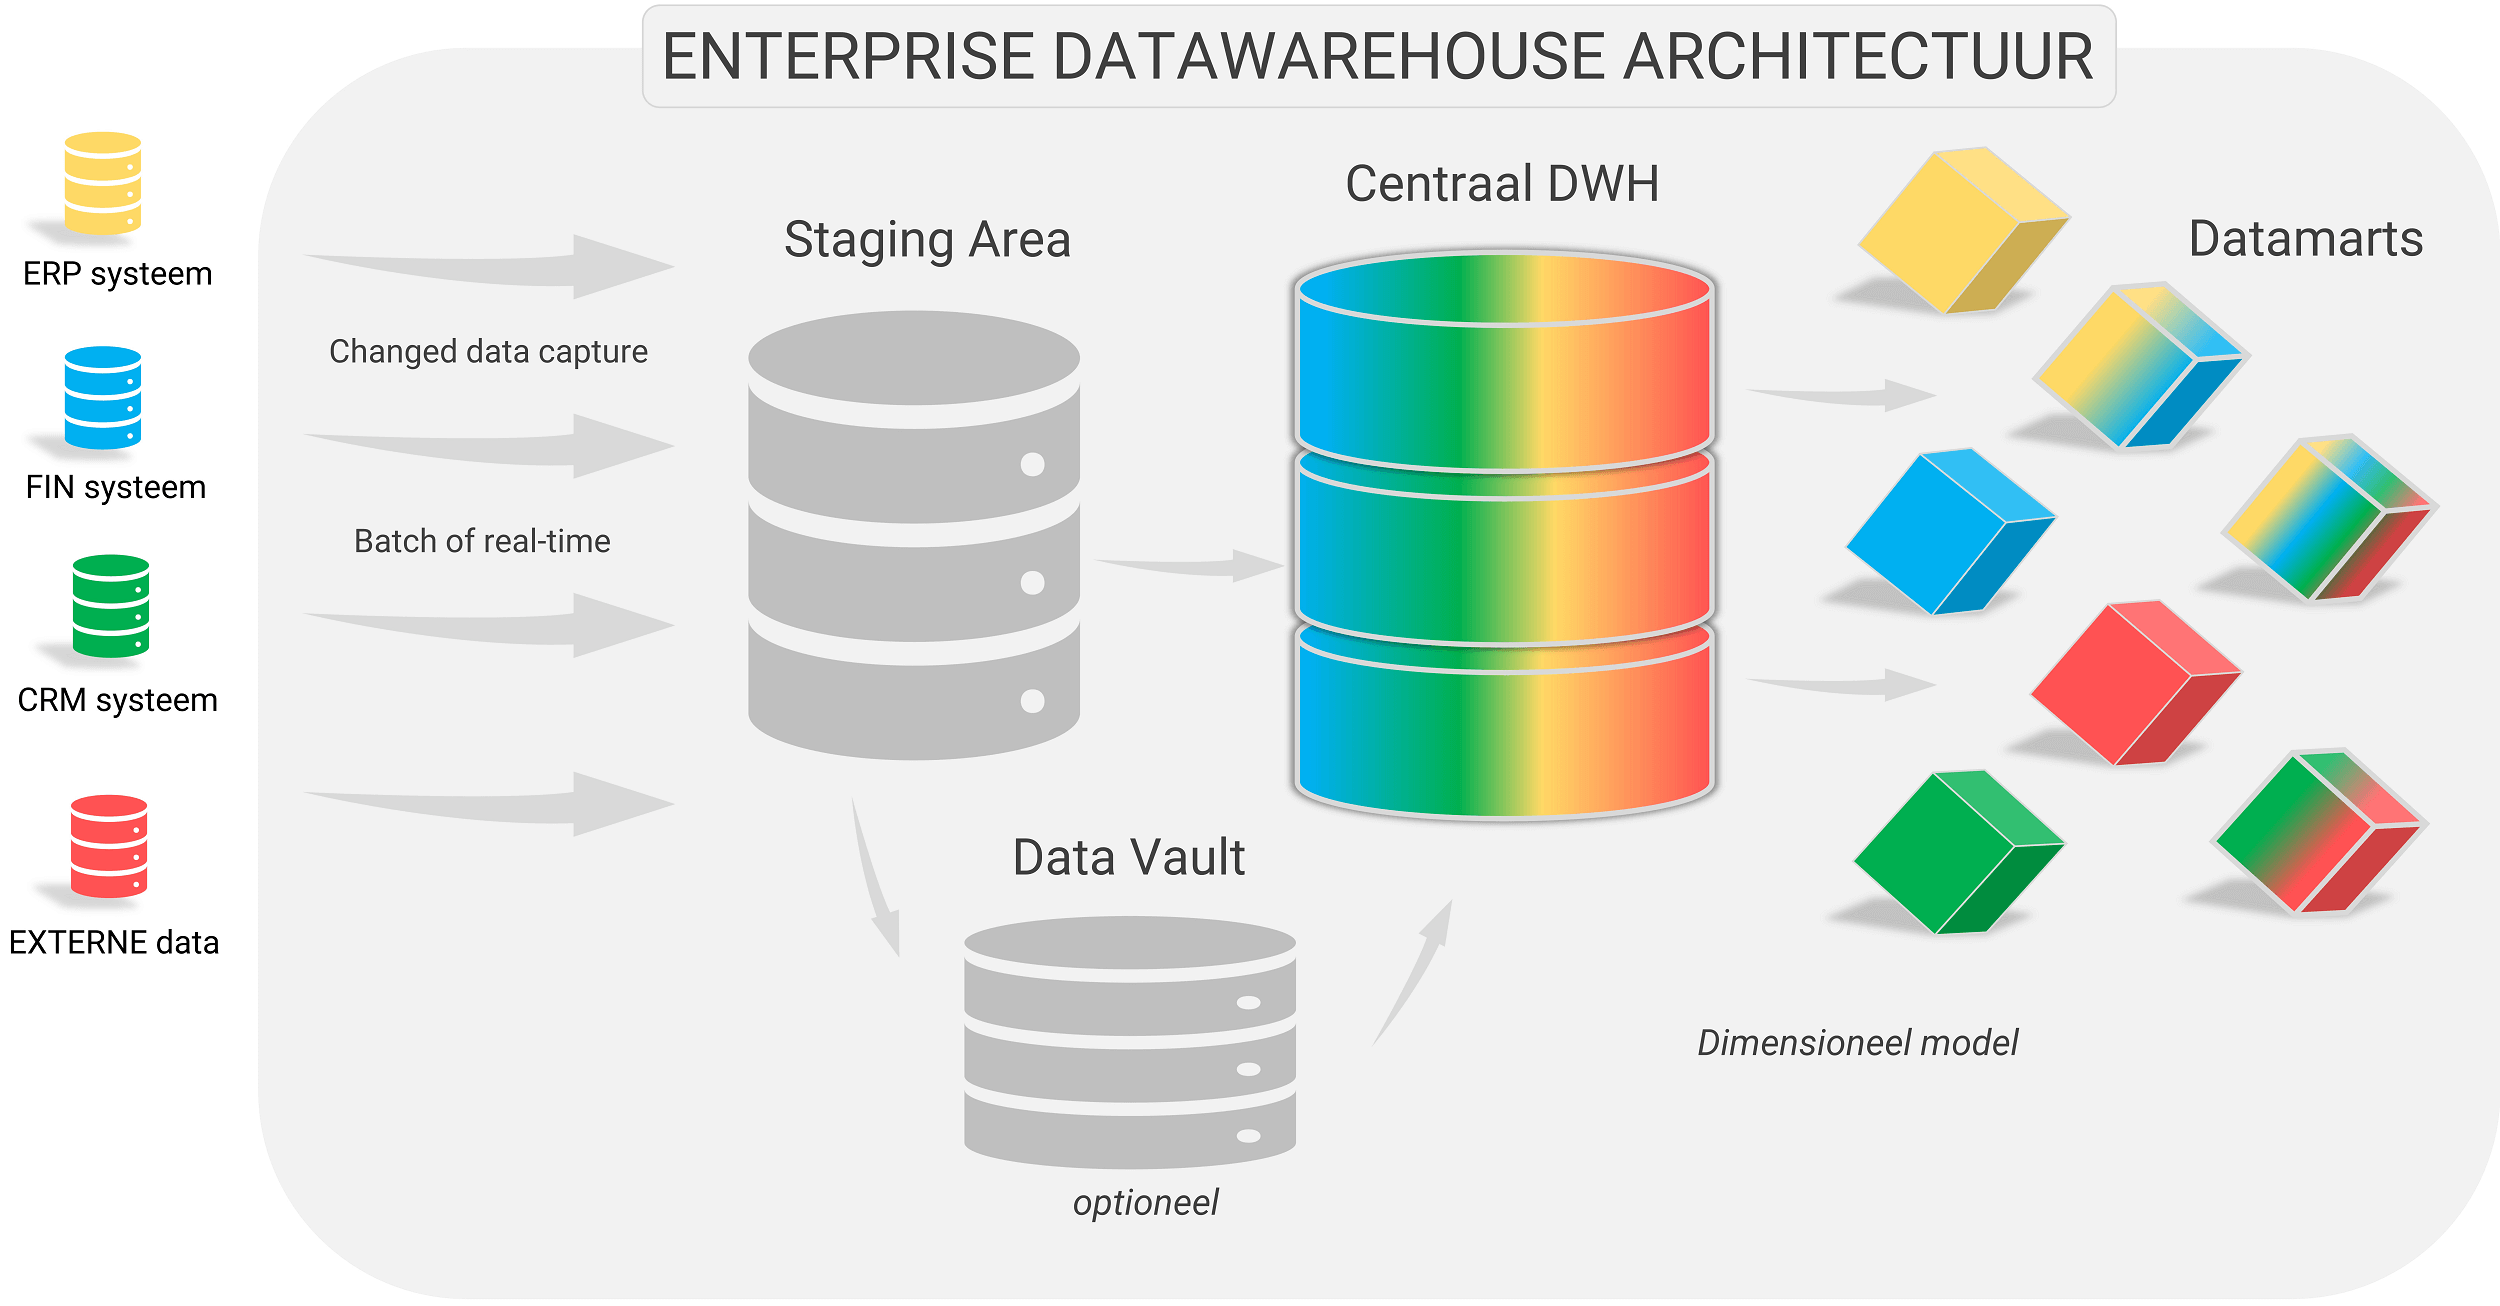 De belangrijkste componenten van een enterprise datawarehouse architectuur